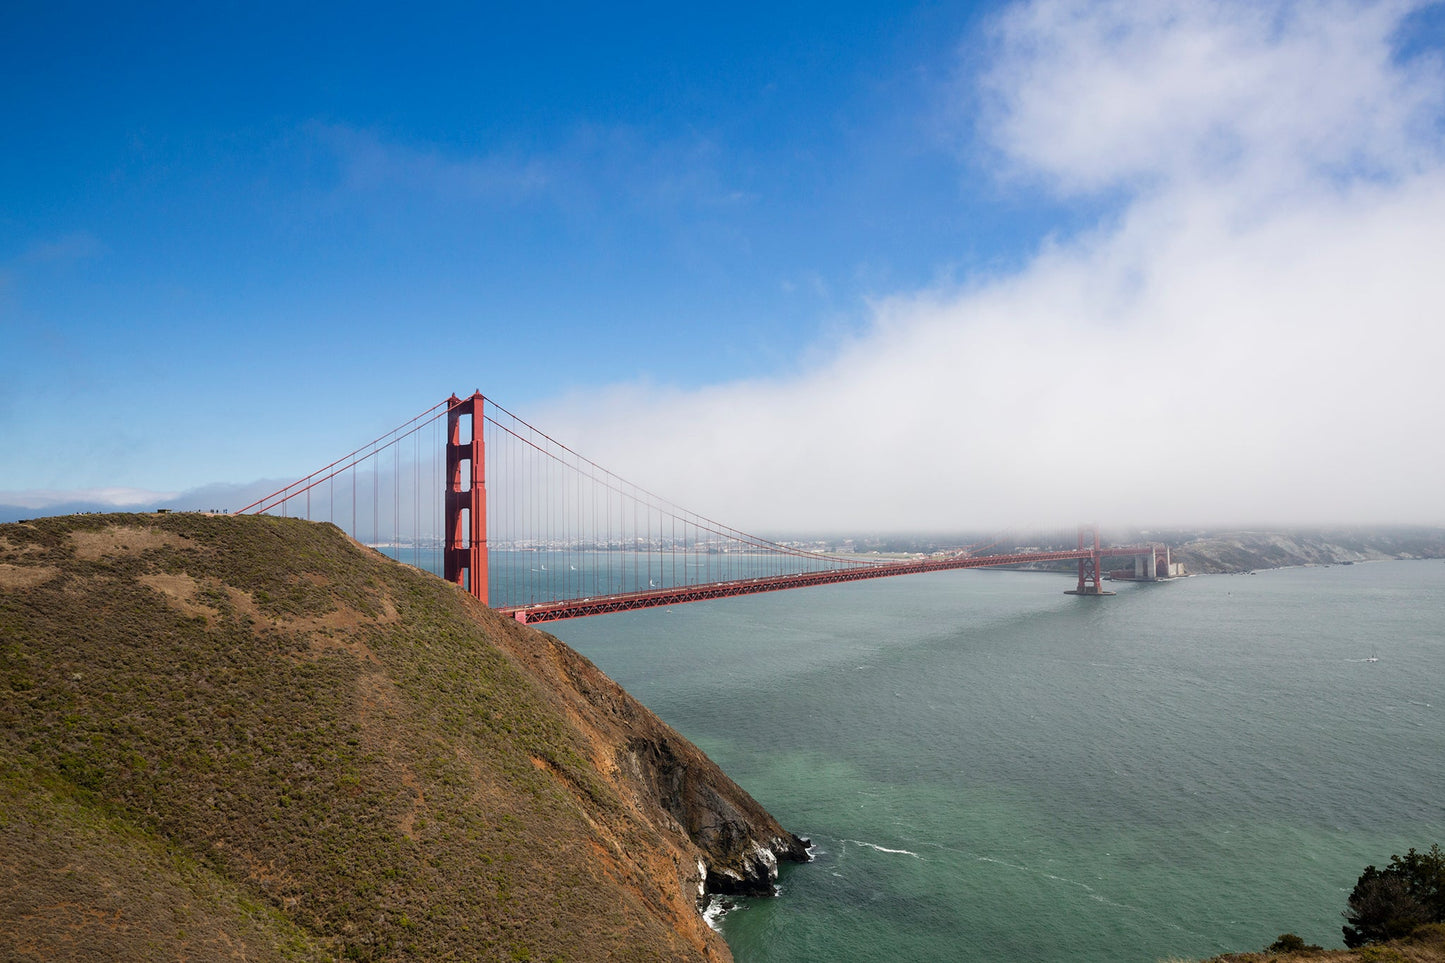 Golden Gate Bridge 3 - San Francisco, California USA